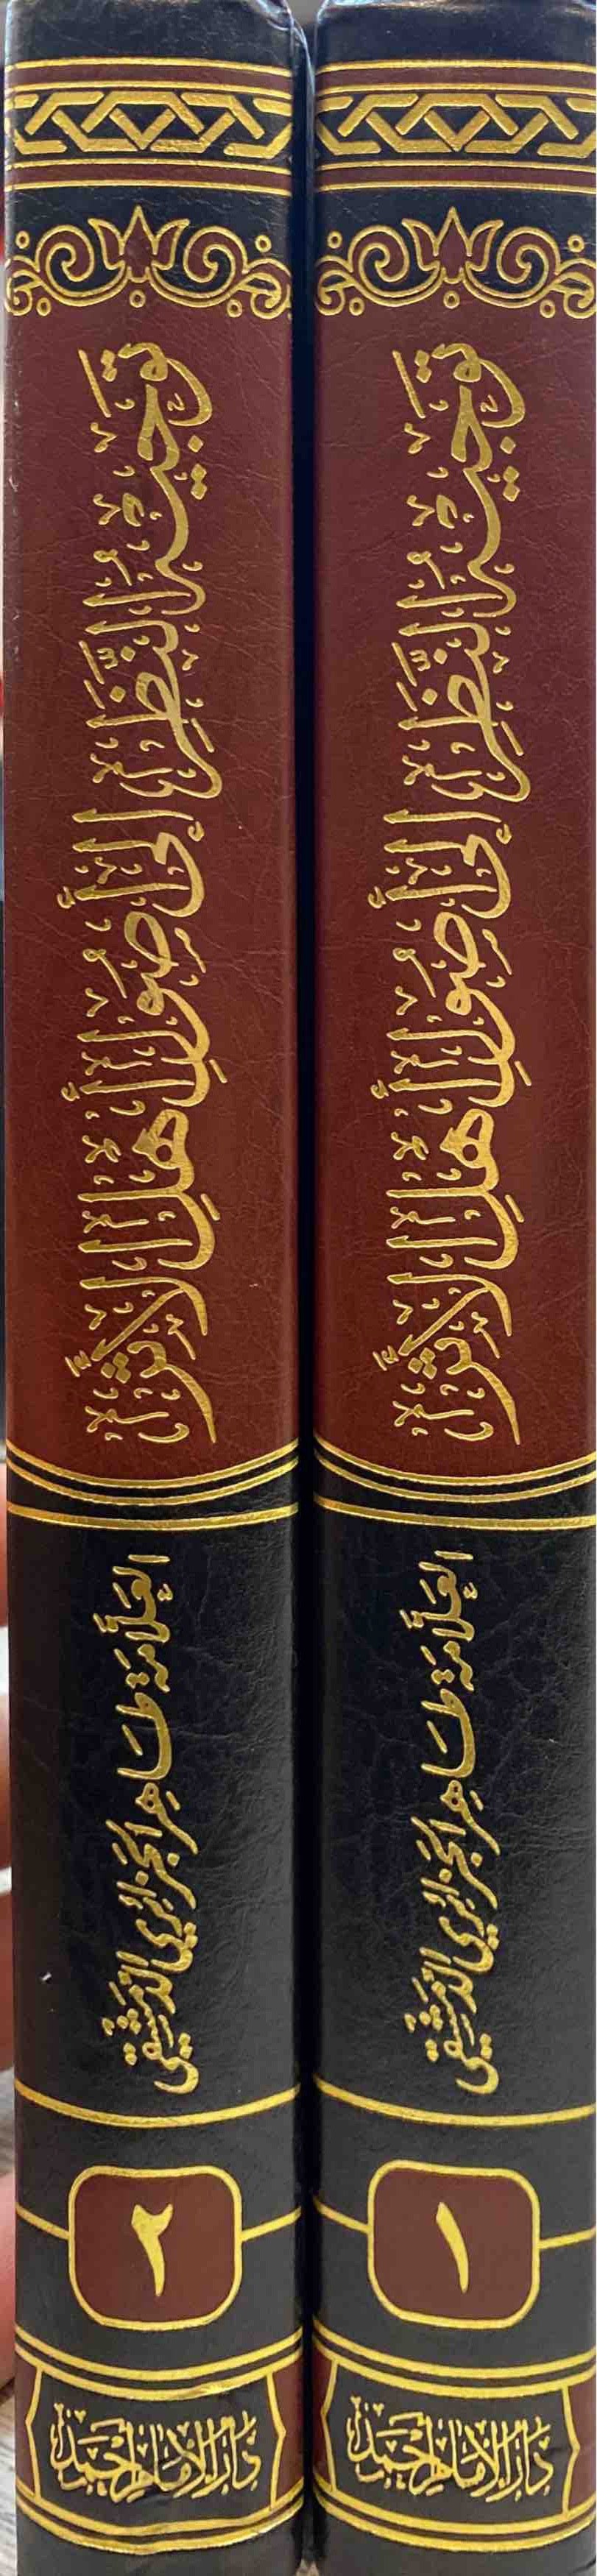 توجيه النظر الى أصول اهل الأثر Tawjih An Nathar Ila Usul Ahlul Athar (2 Volume Set)